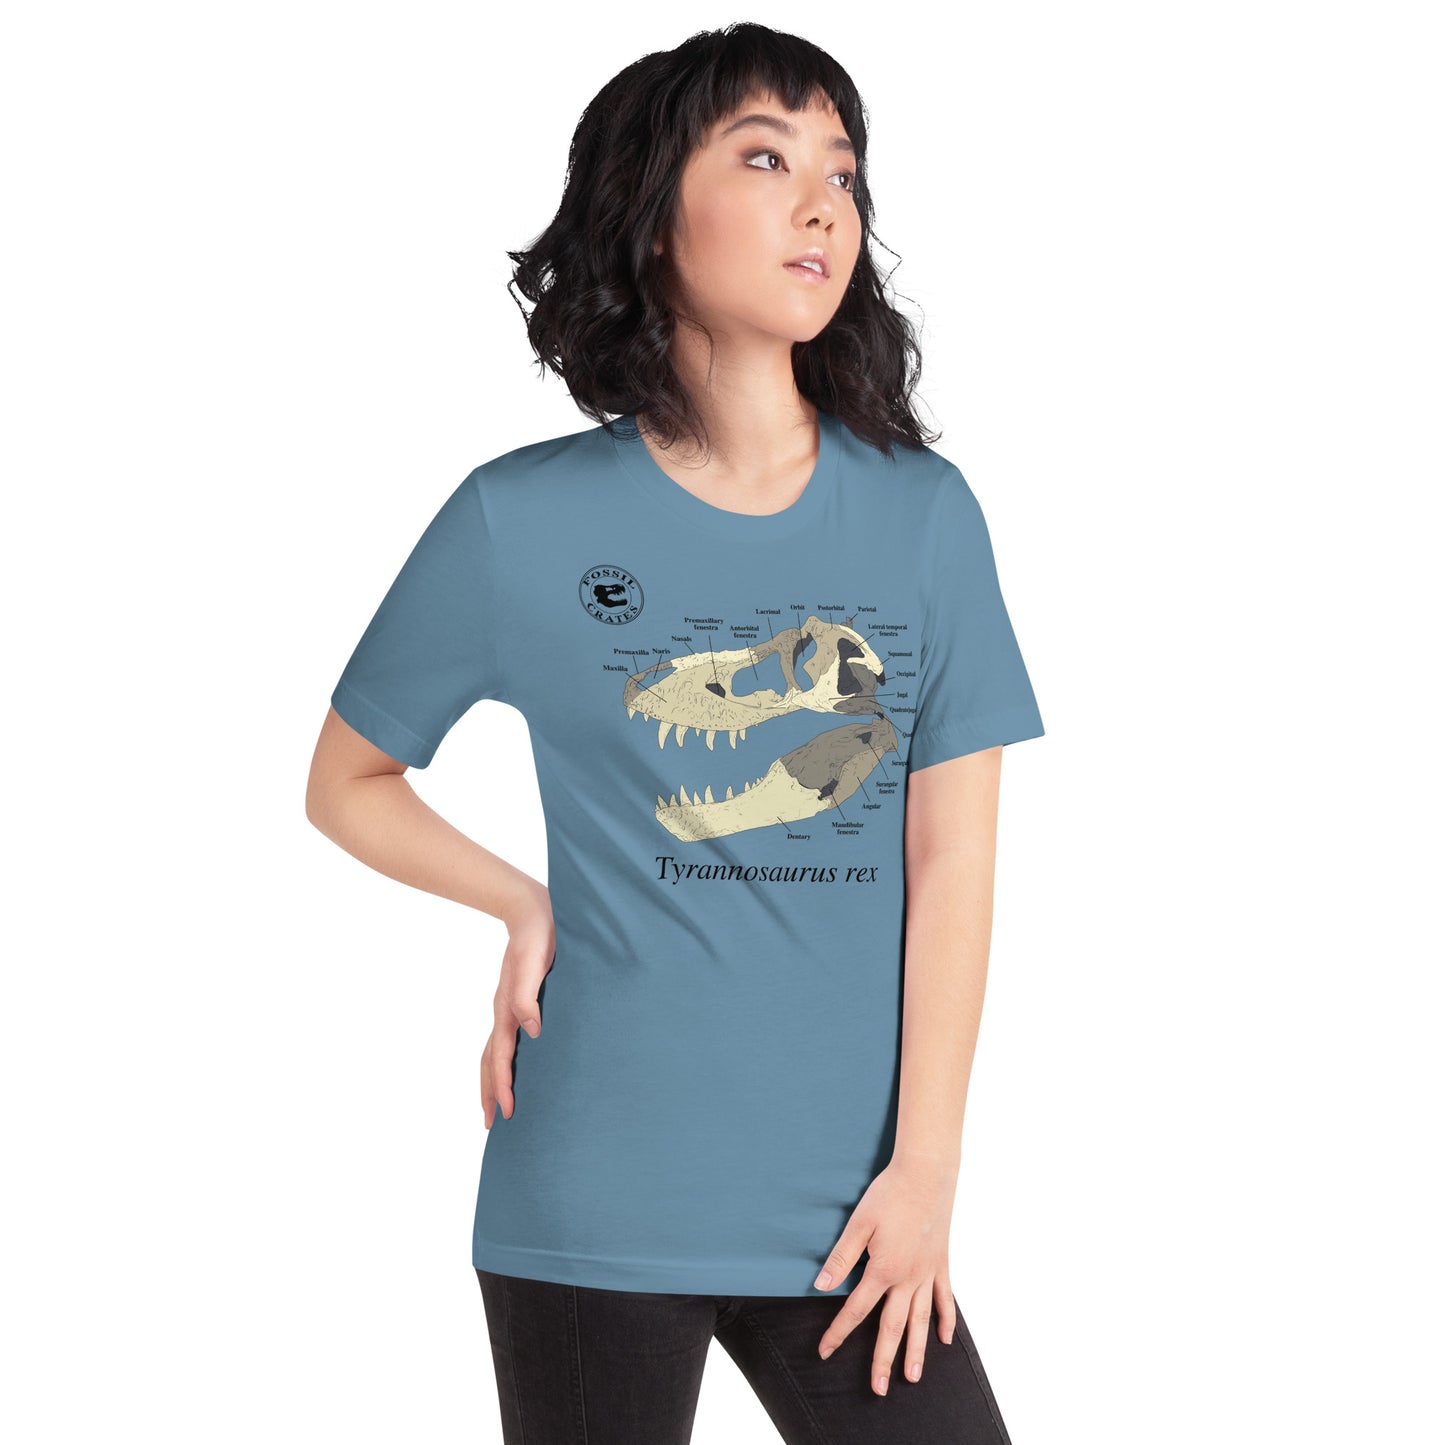 Tyrannosaurus rex Skull Anatomy T-shirt Steel Blue